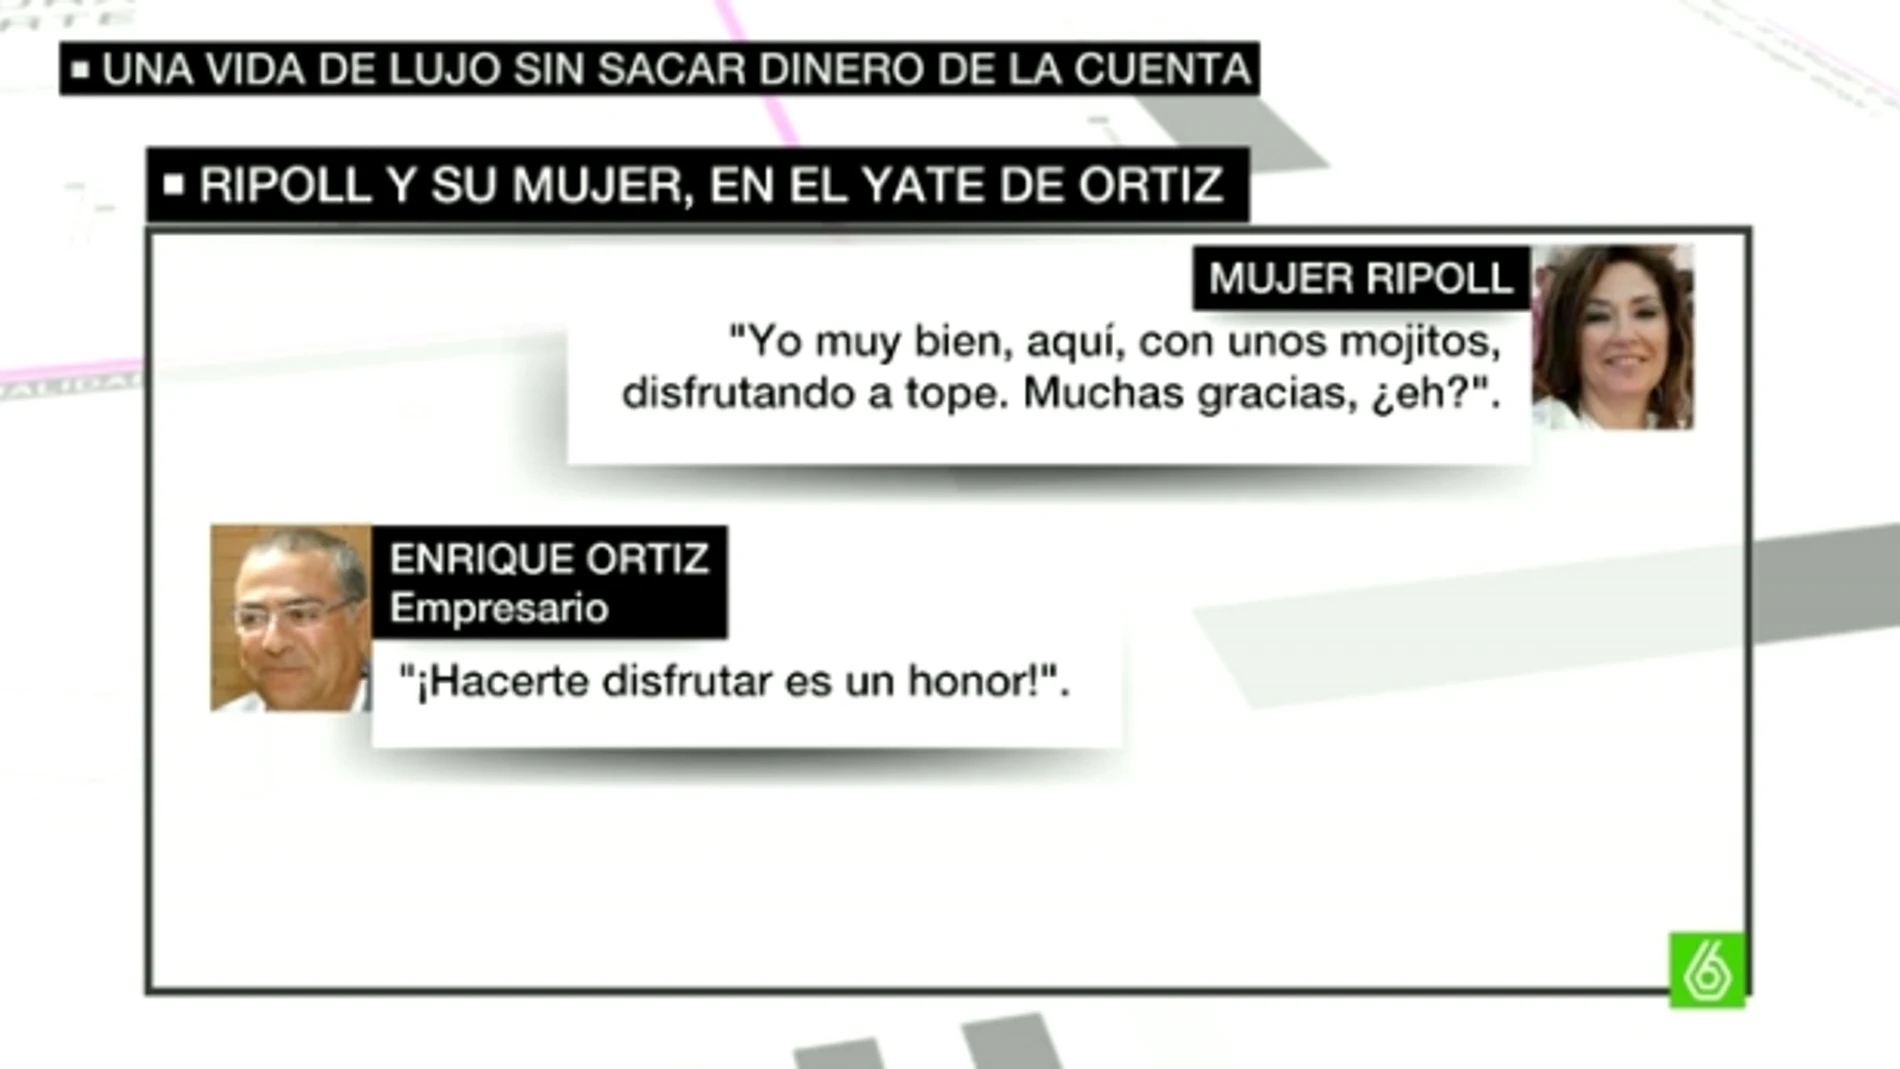 Conversaciones de Ripoll y Enrique Ortiz